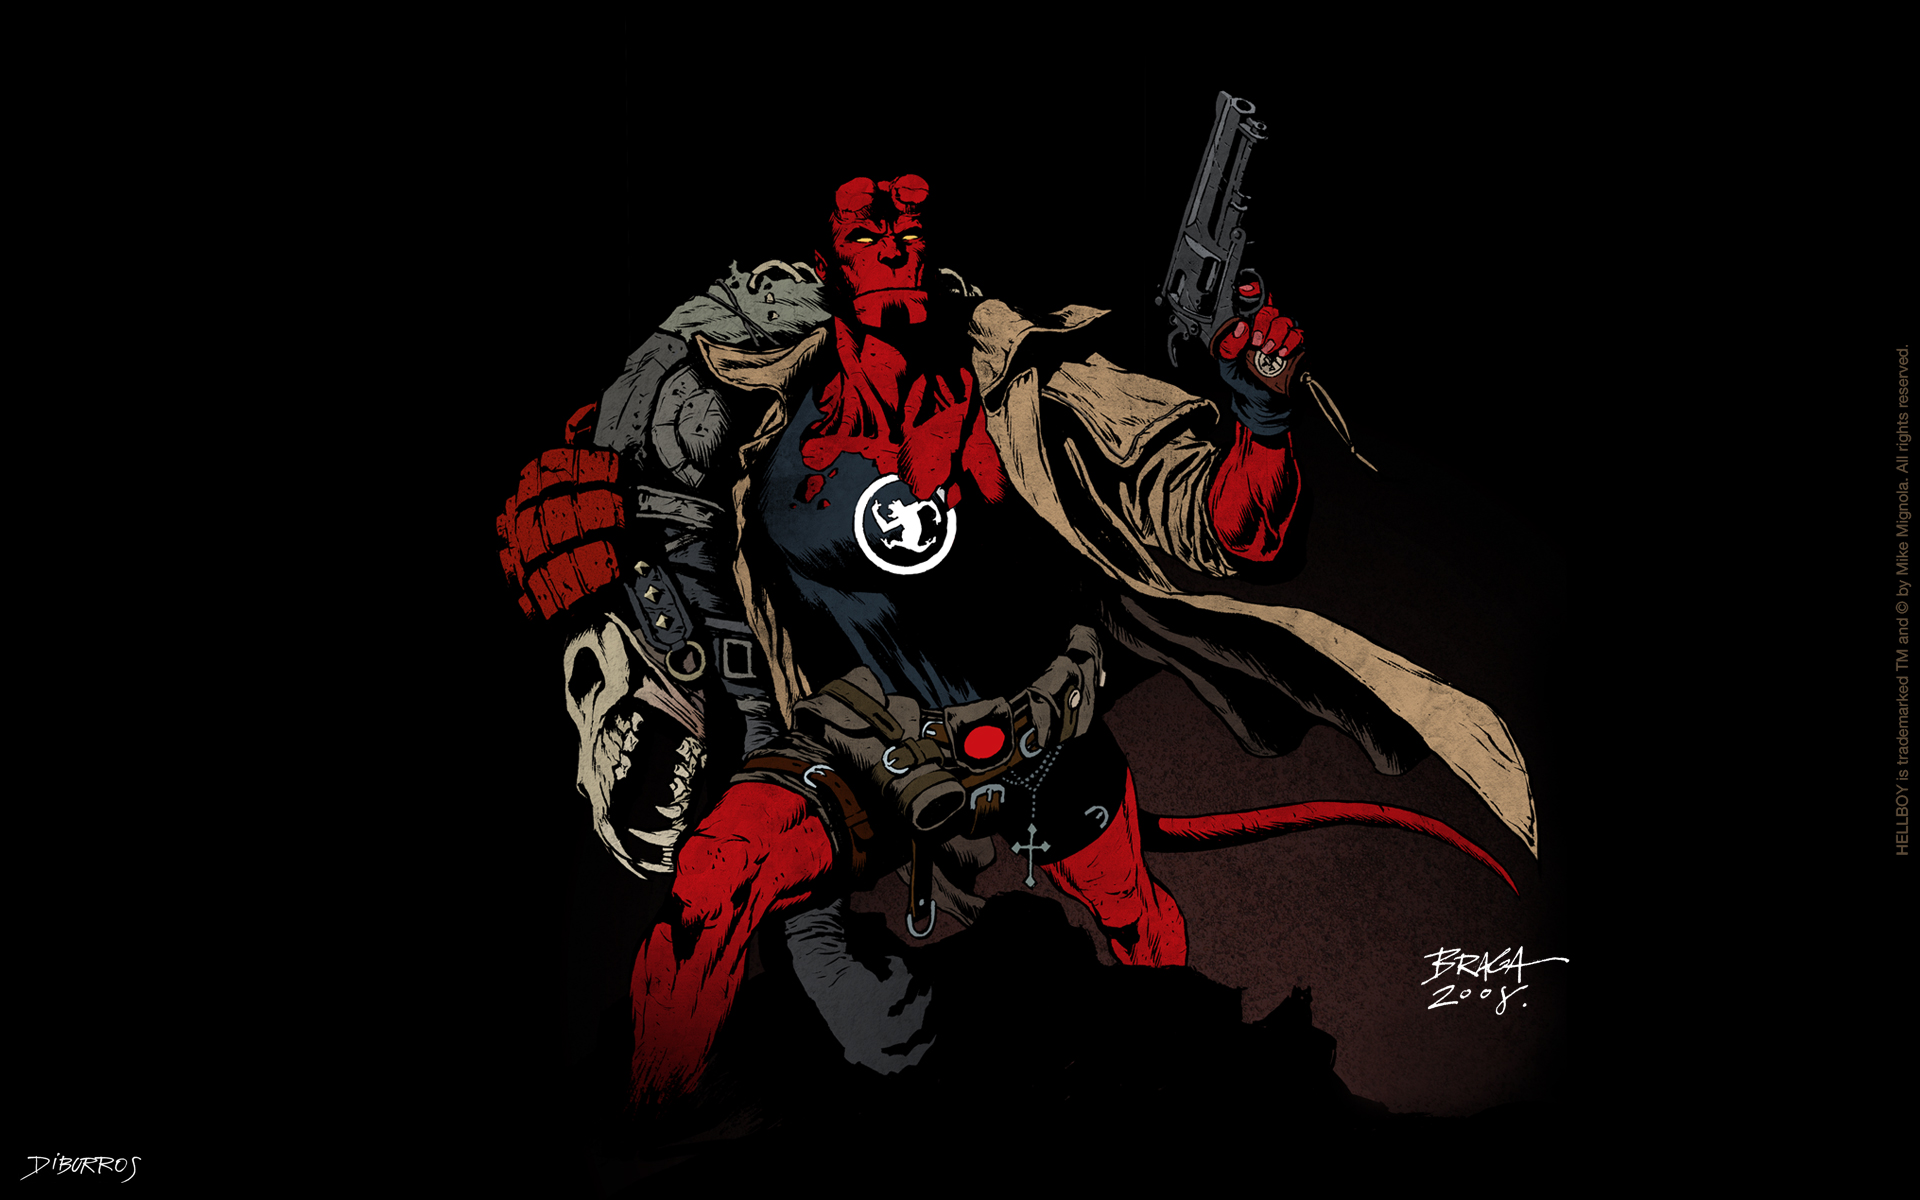 Descarga gratuita de fondo de pantalla para móvil de Historietas, Hellboy.